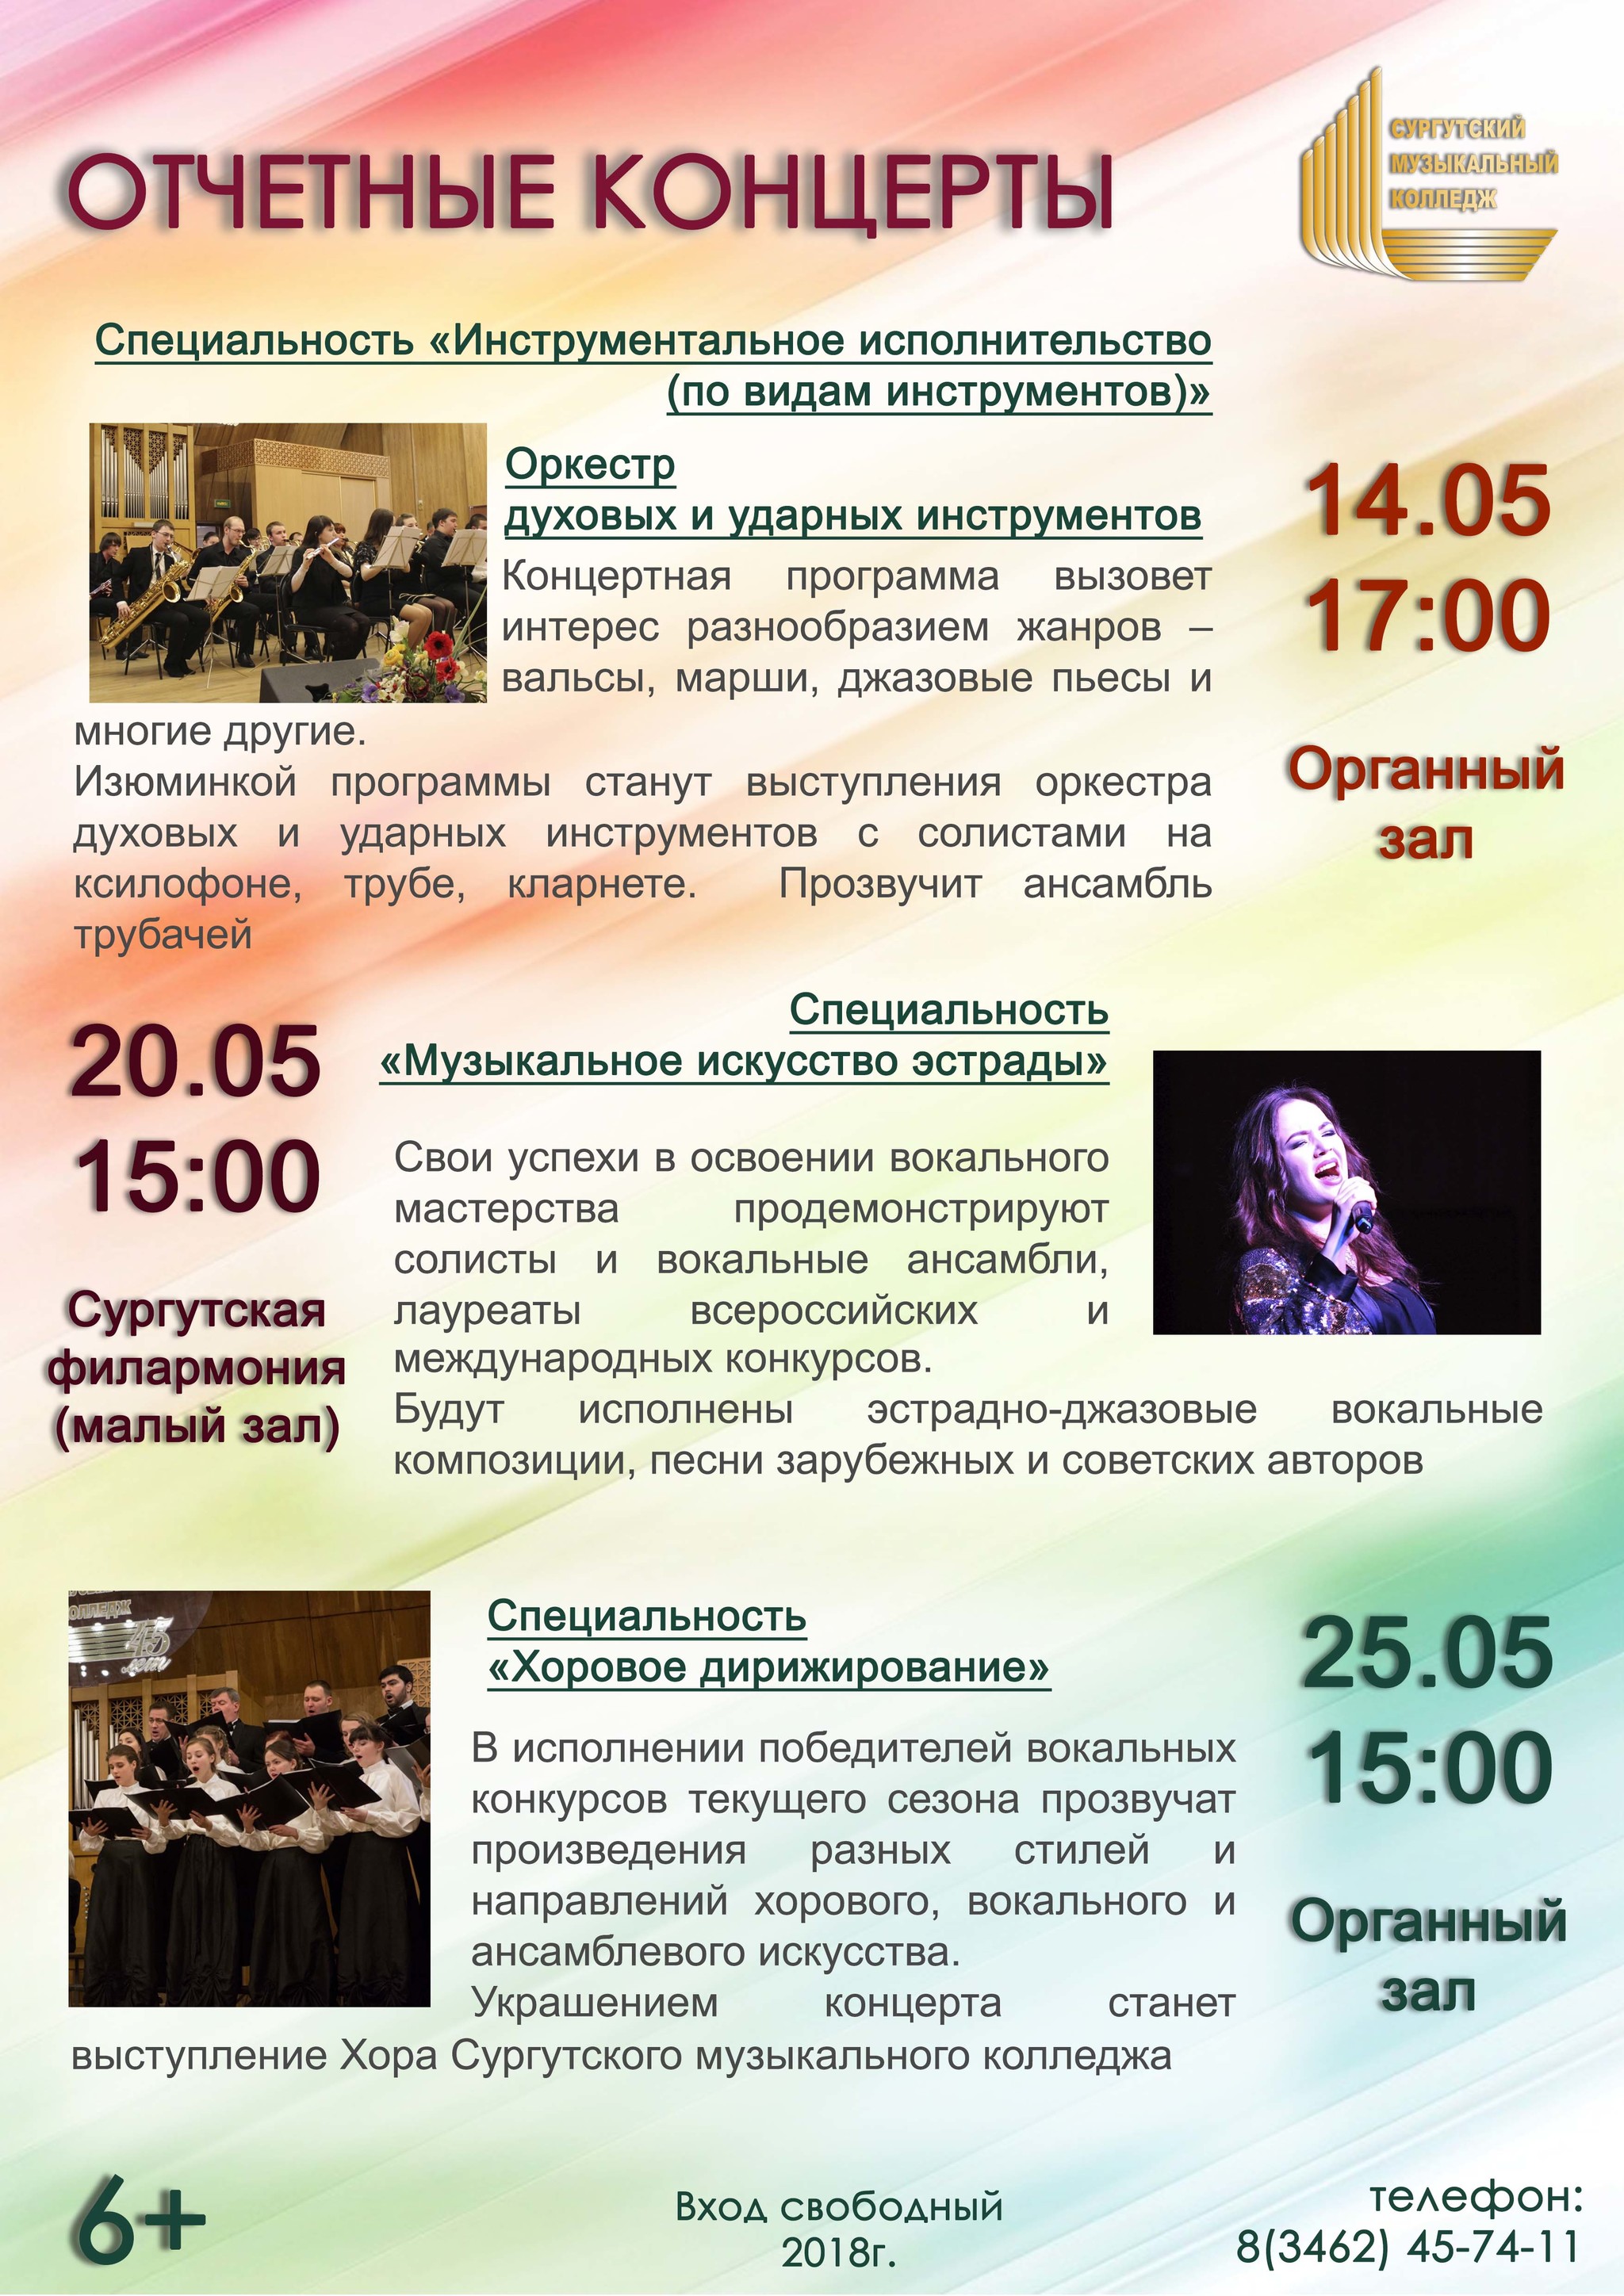 В Сургутском музыкальном колледже – период отчетных концертов 